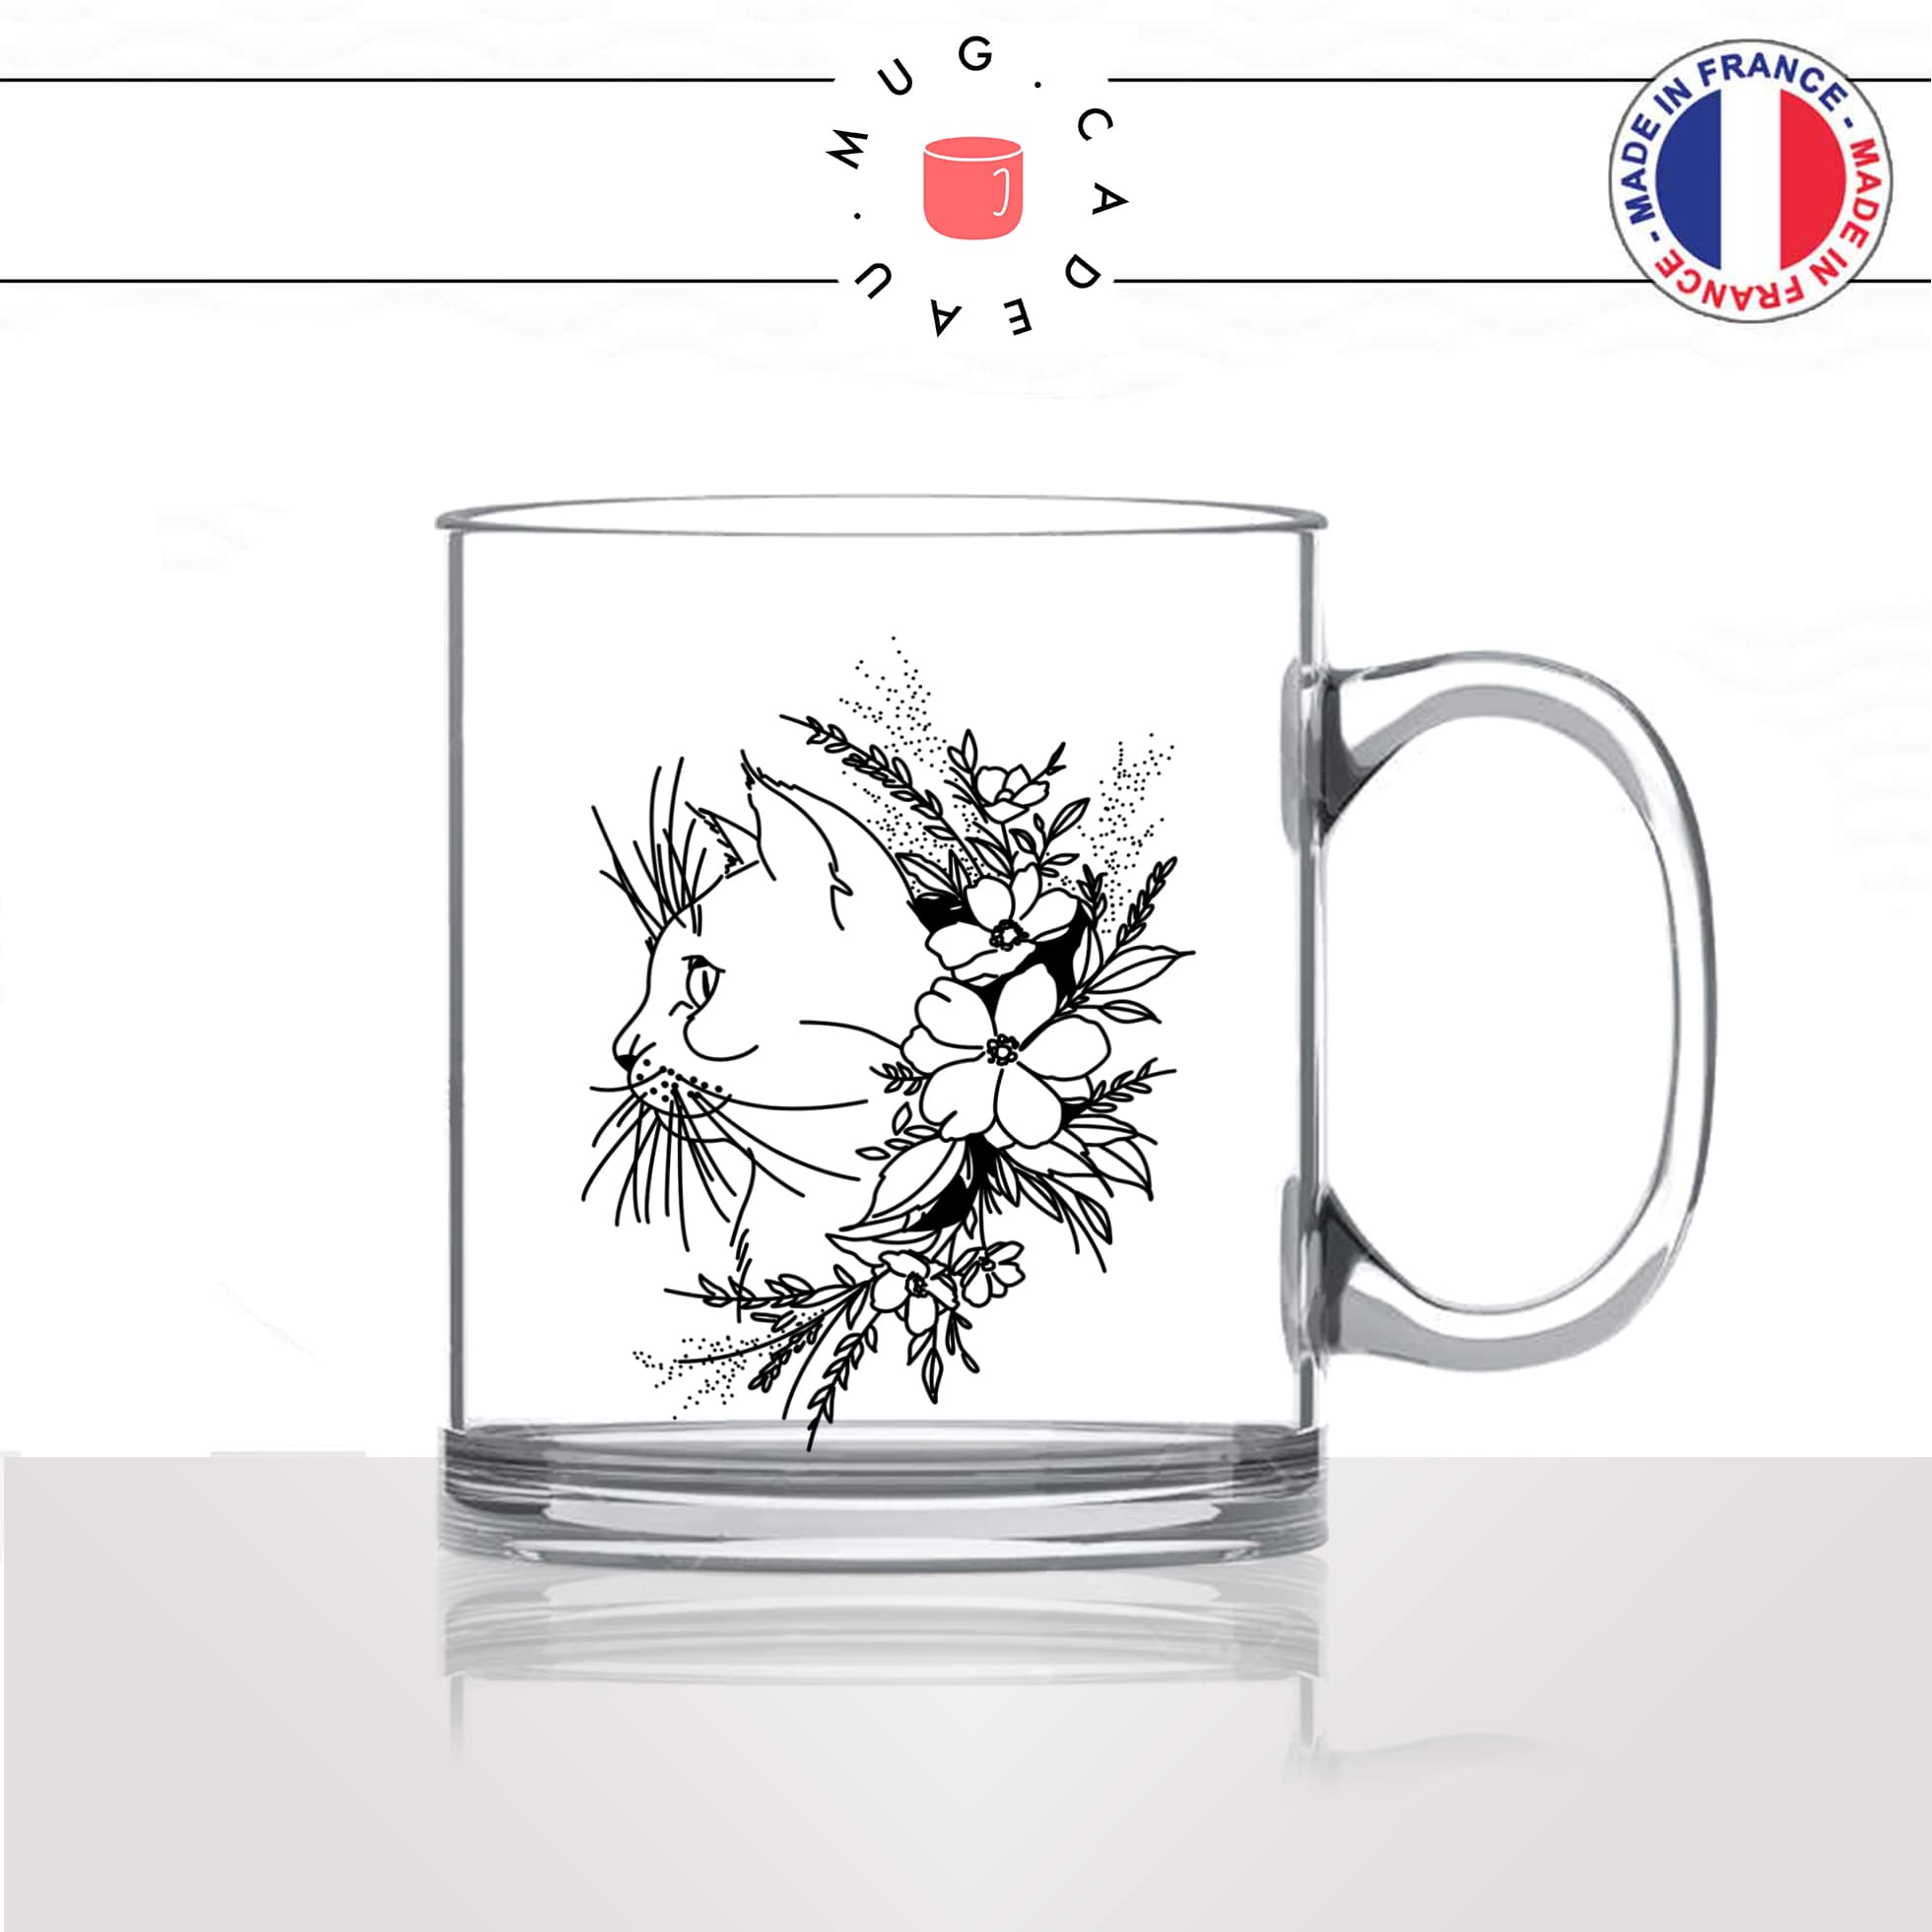 mug-tasse-en-verre-transparent-glass-animaux-déco-fleurs-moustaches-chats-animal-chaton-dessin-noir-fun-café-thé-idée-cadeau-original-personnalisable2-min